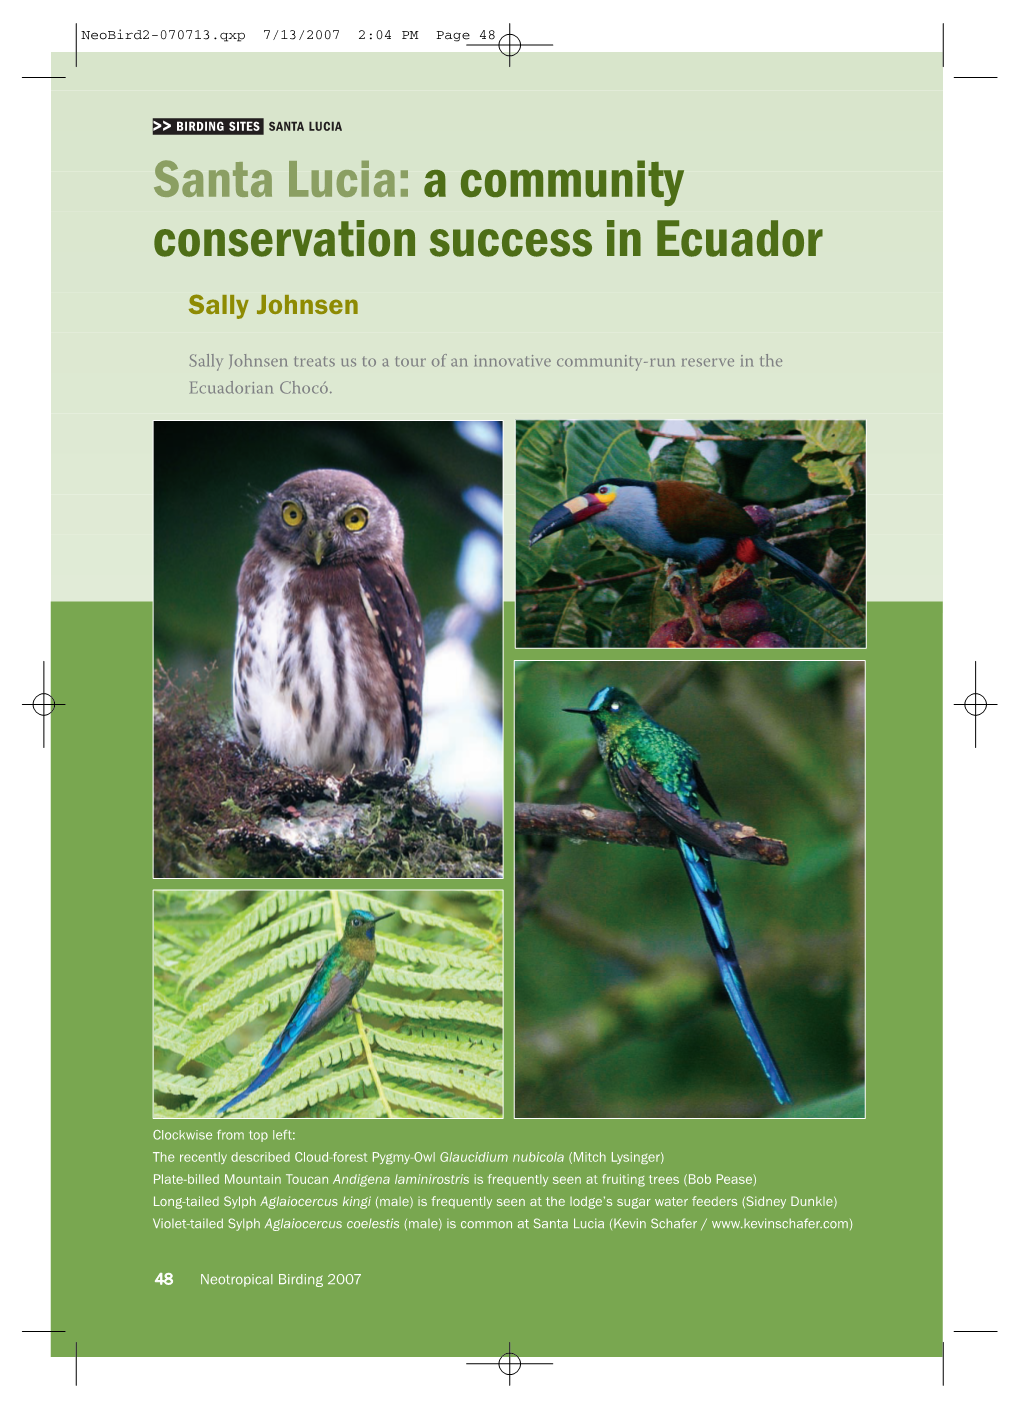 SANTA LUCIA Santa Lucia: a Community Conservation Success in Ecuador Sally Johnsen